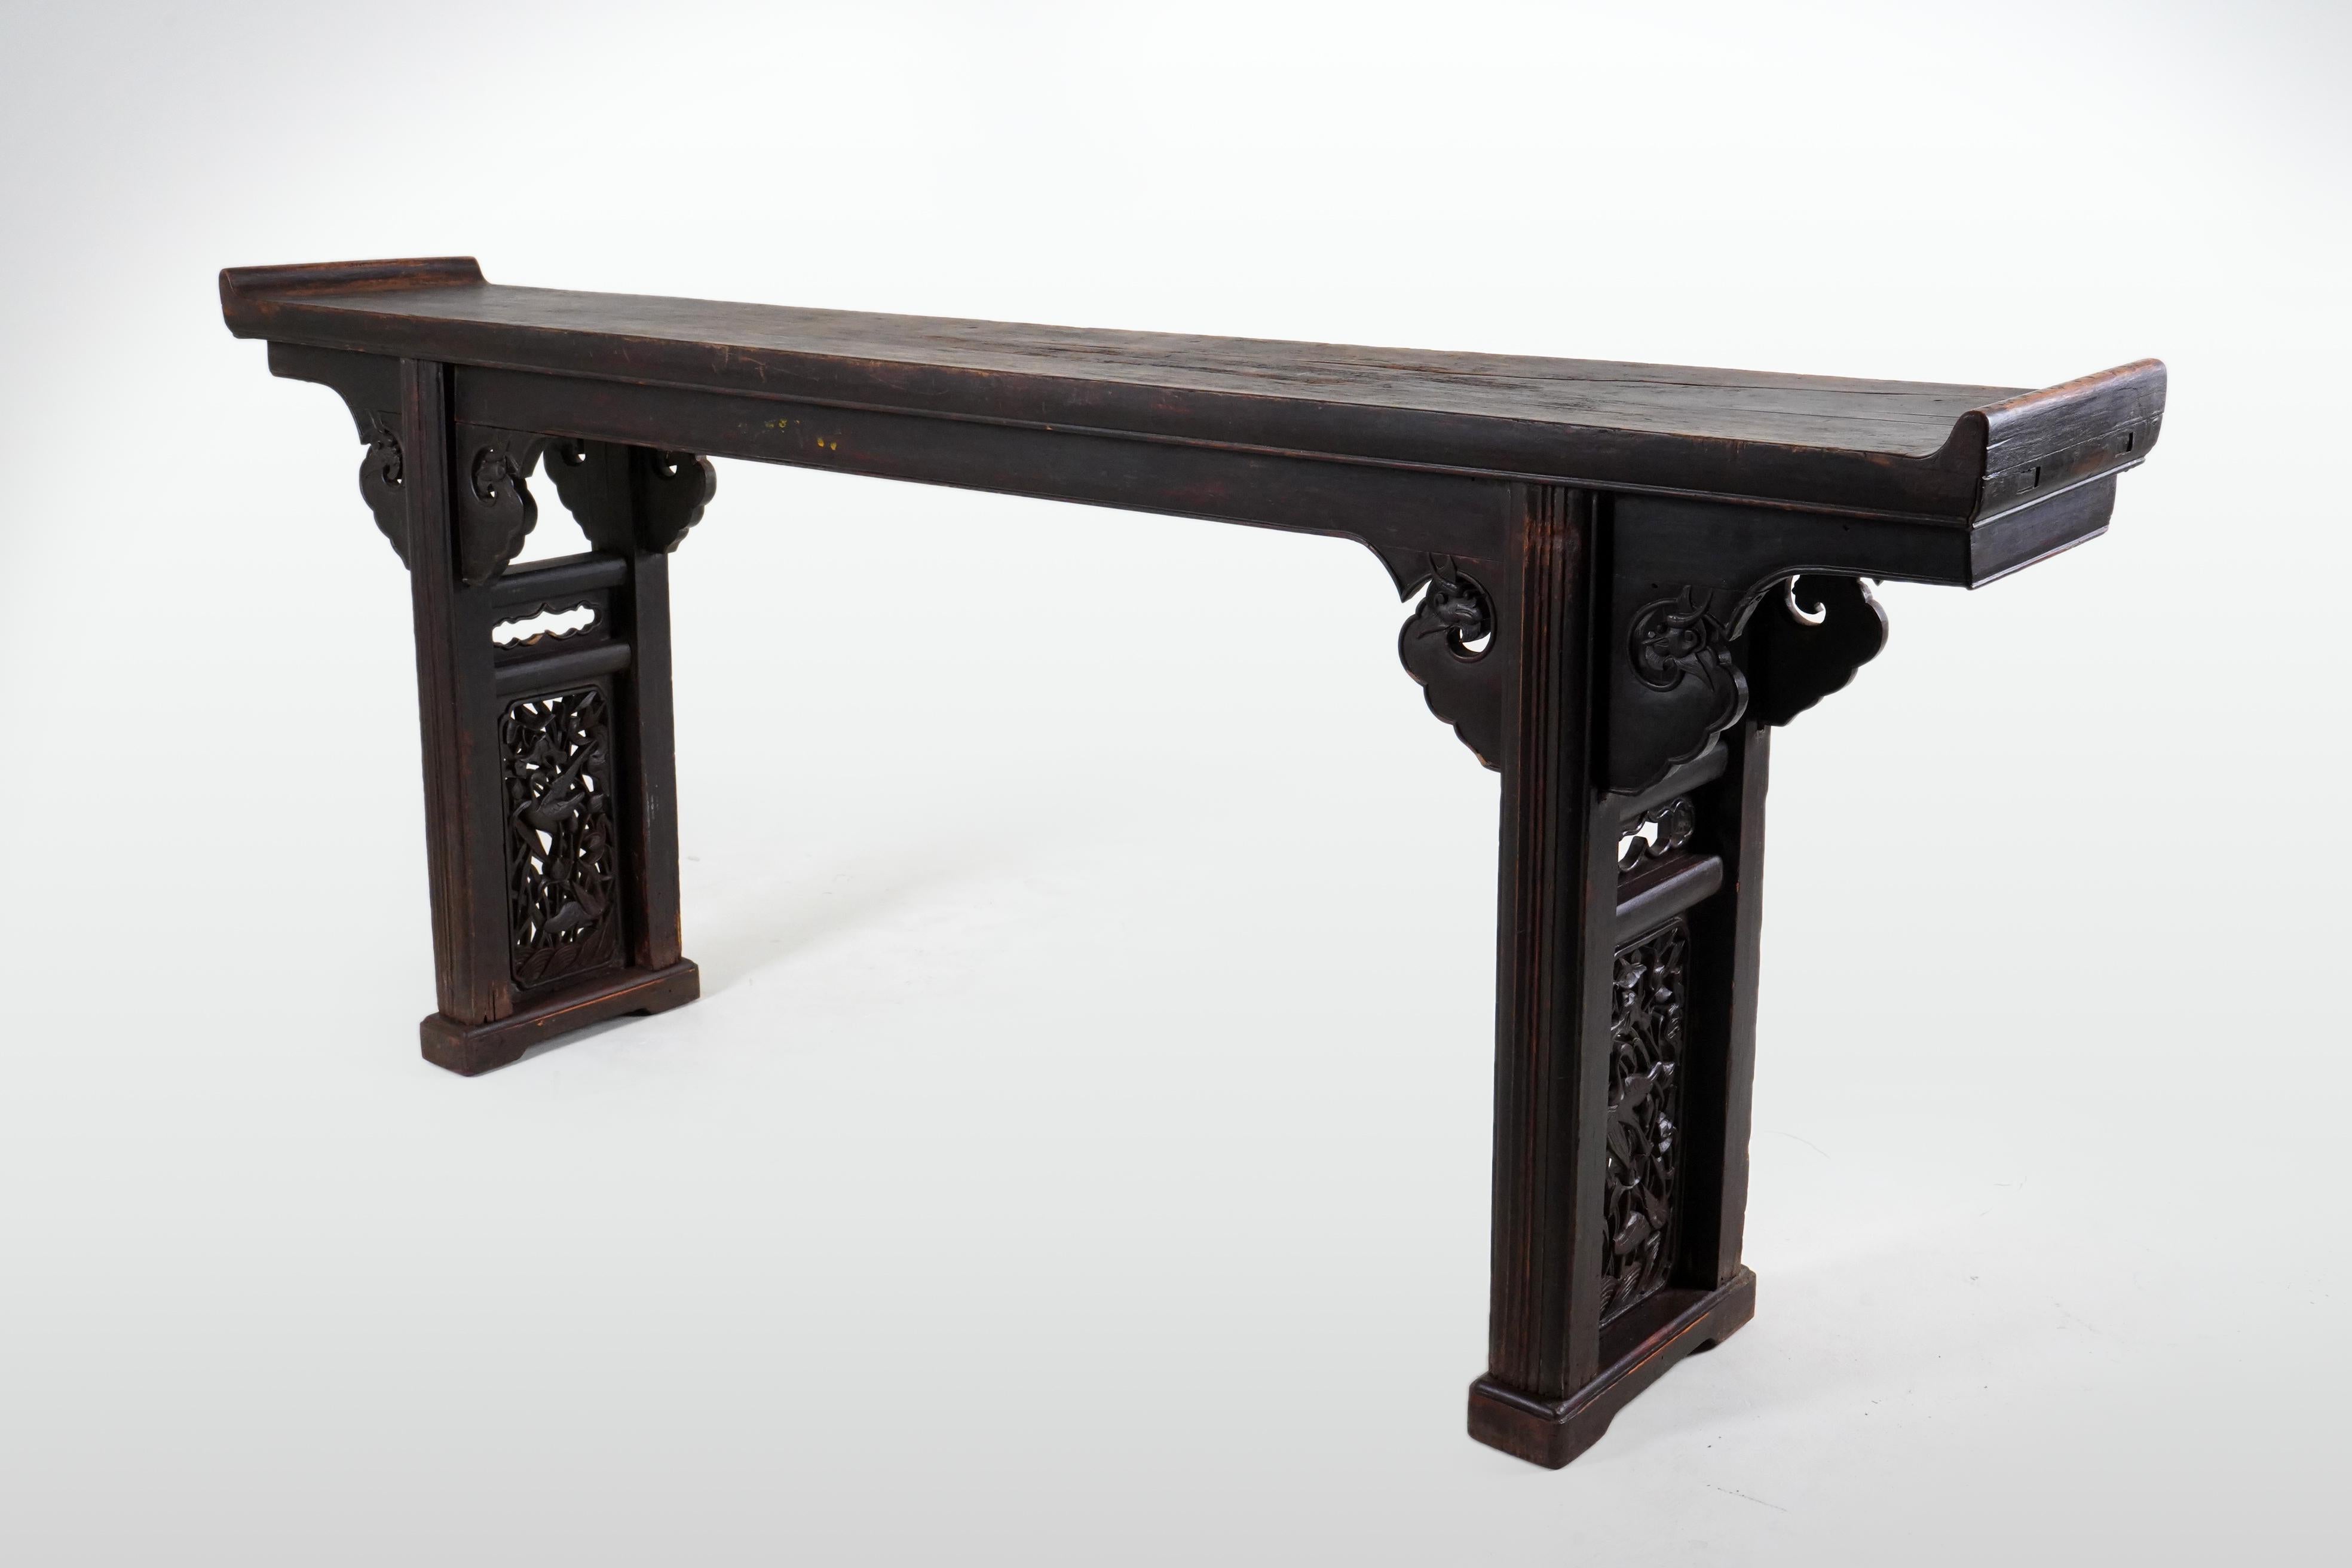 Cette longue et gracieuse table d'autel chinoise présente une patine sang-de-bœuf qui s'est assombrie avec le temps. Le sang de bœuf est l'une des trois laques chinoises traditionnelles, avec le rouge et le noir, qui sont tous deux totalement